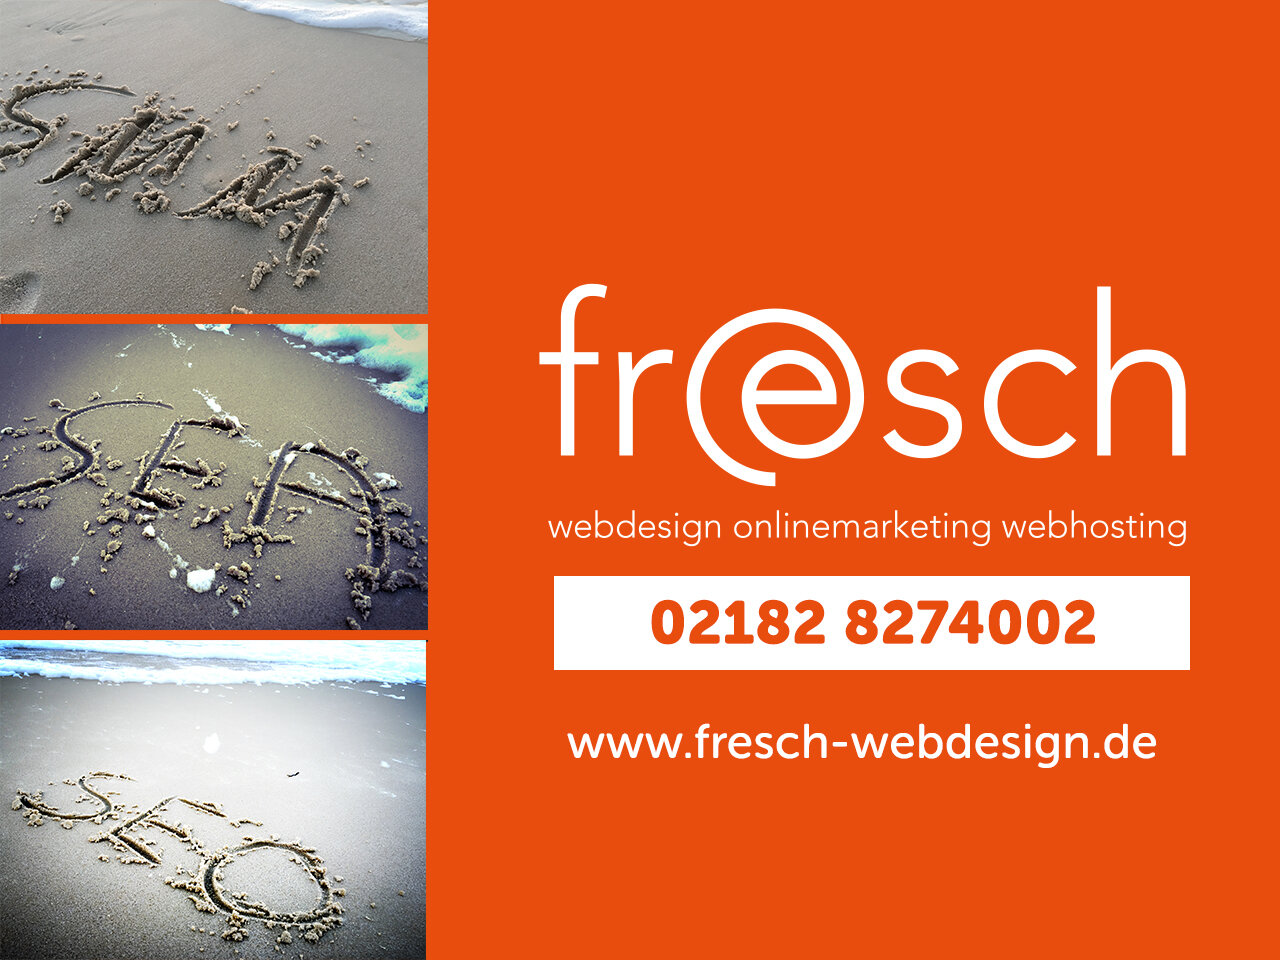 Bild 42 fresch-webdesign GbR in Korschenbroich